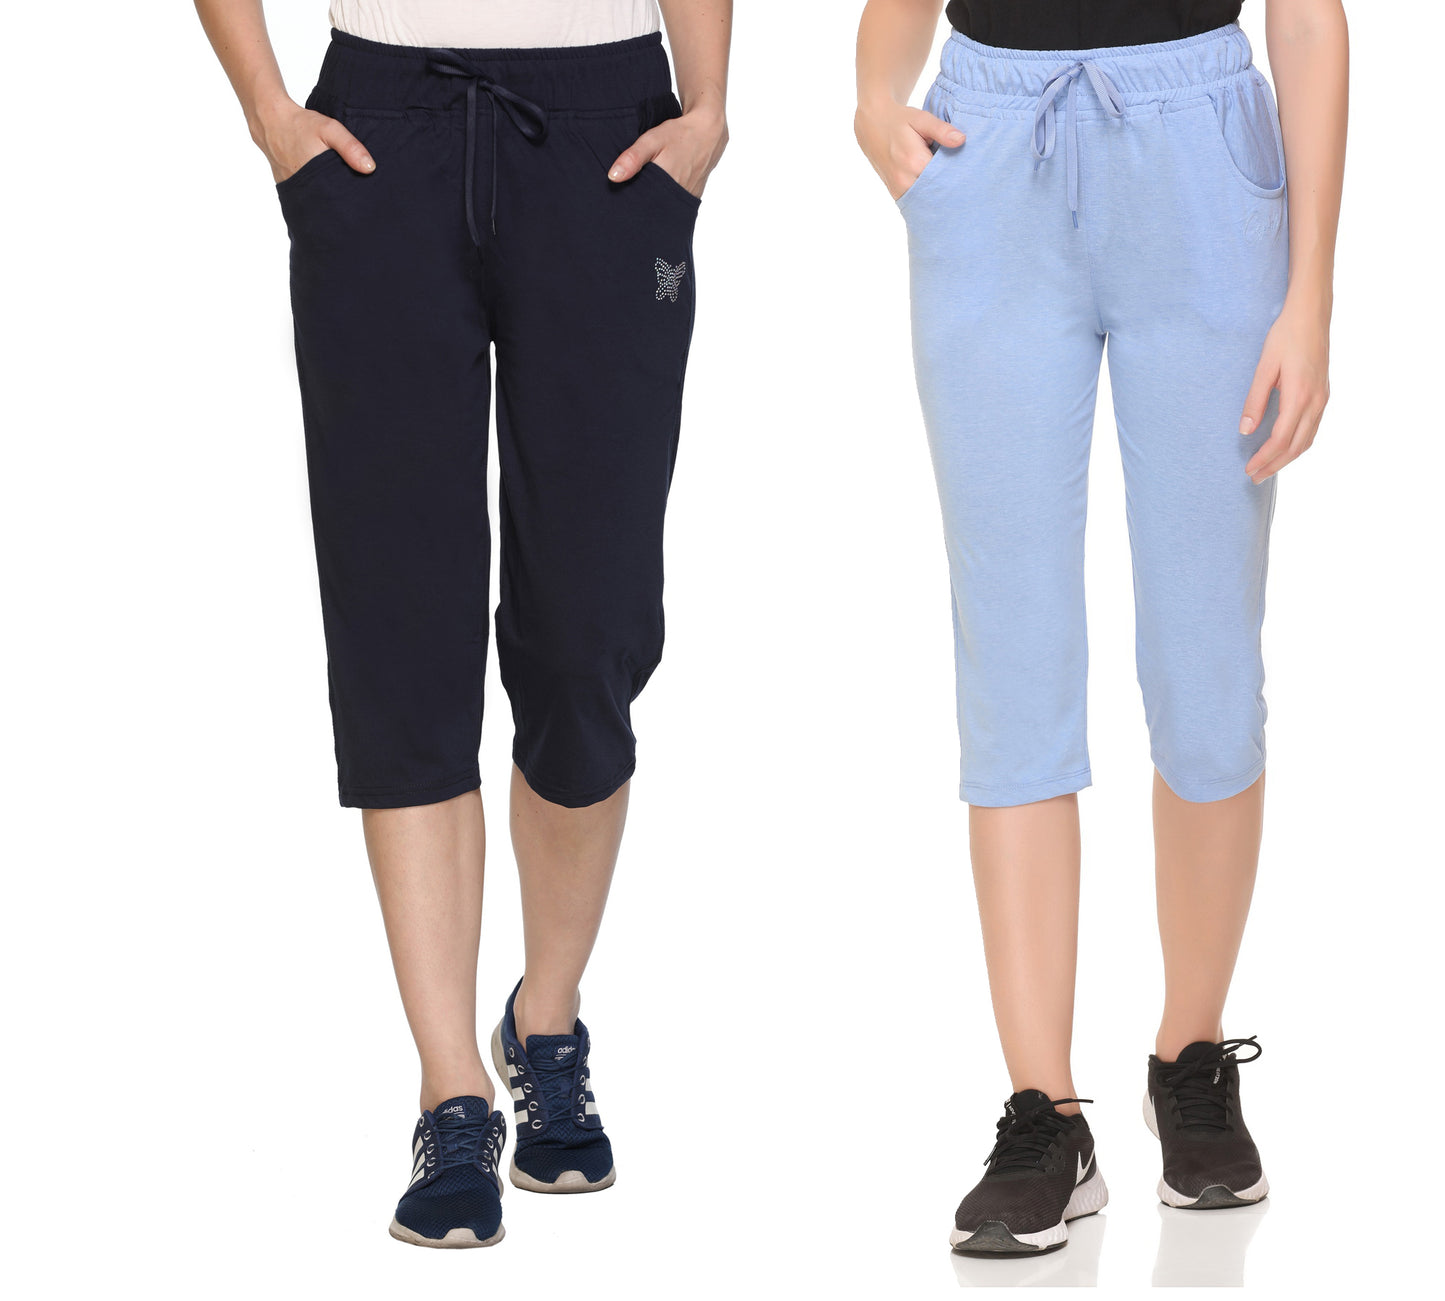 Cotton Capris For Women - Half Pants Pack of 2 (Sky Blue & Black)